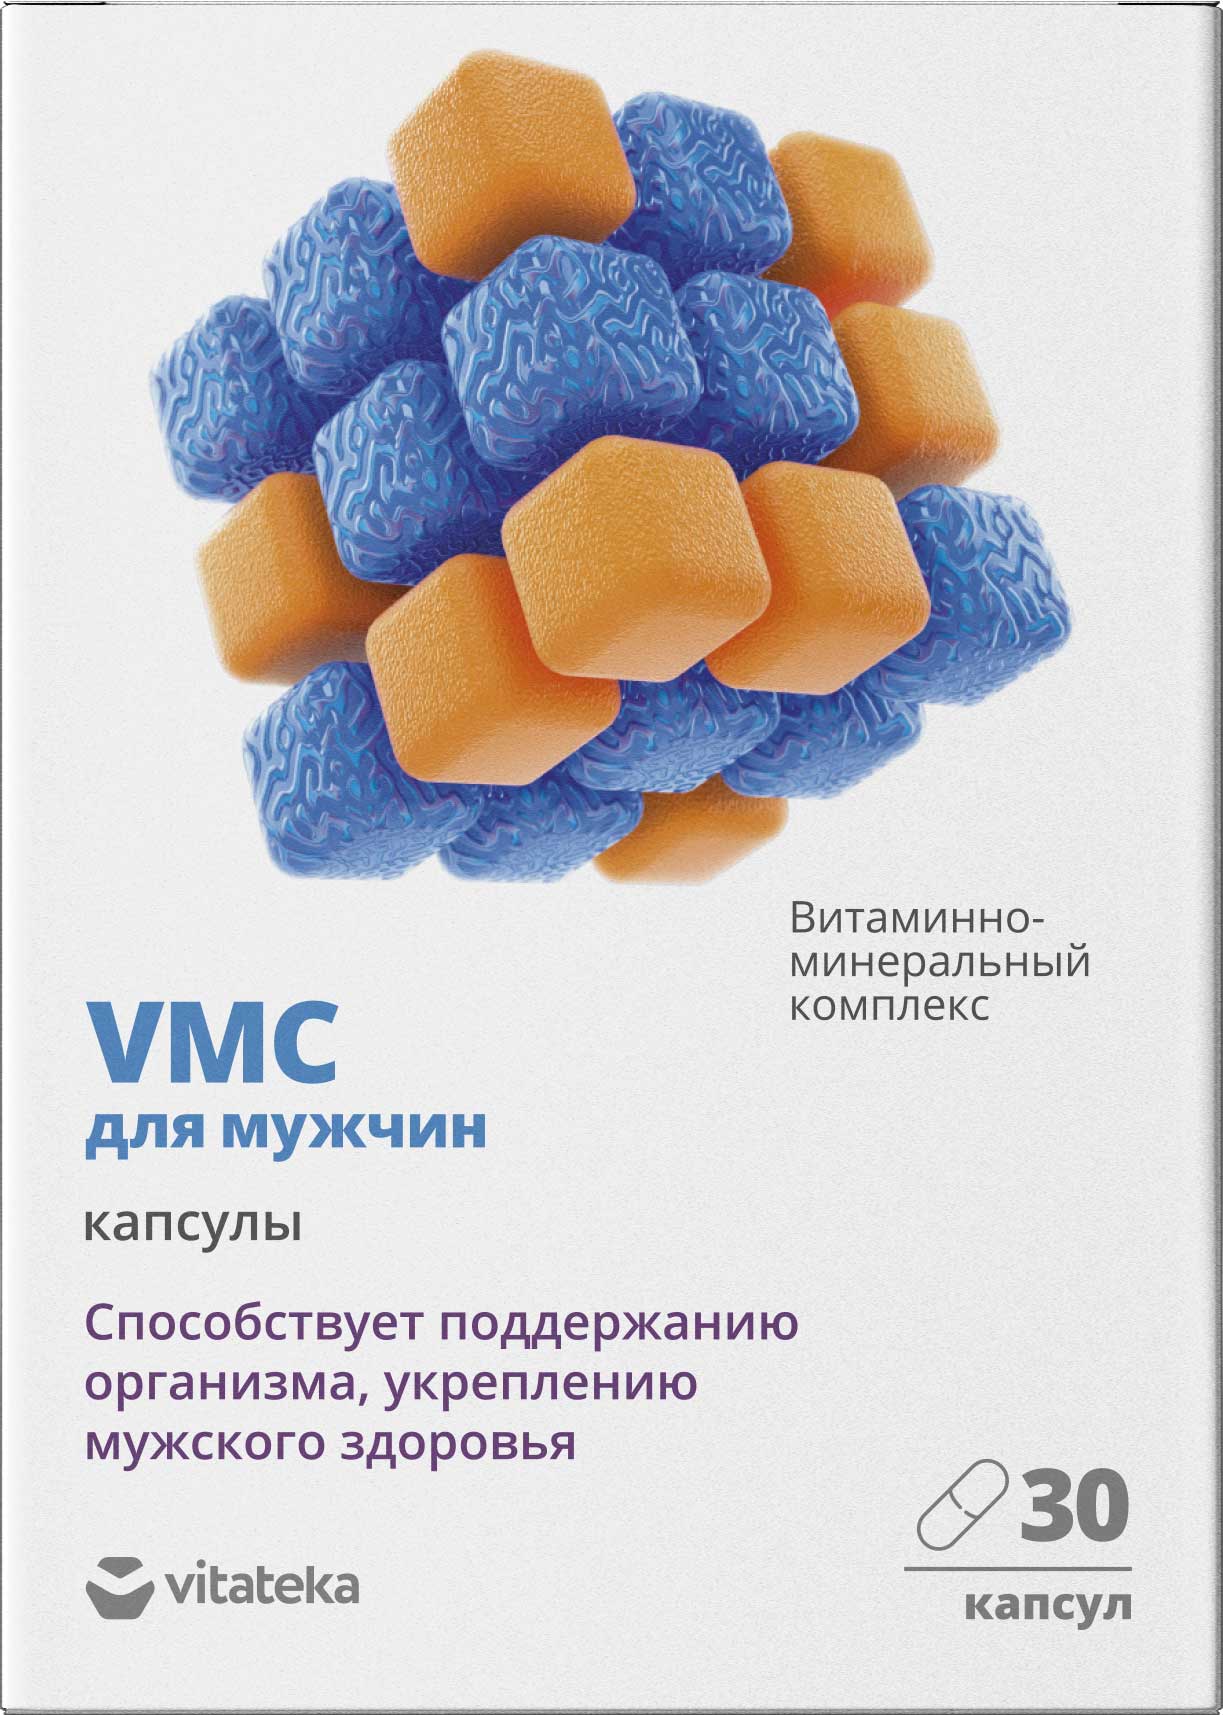 Витаминно-минеральный комплекс для мужчин